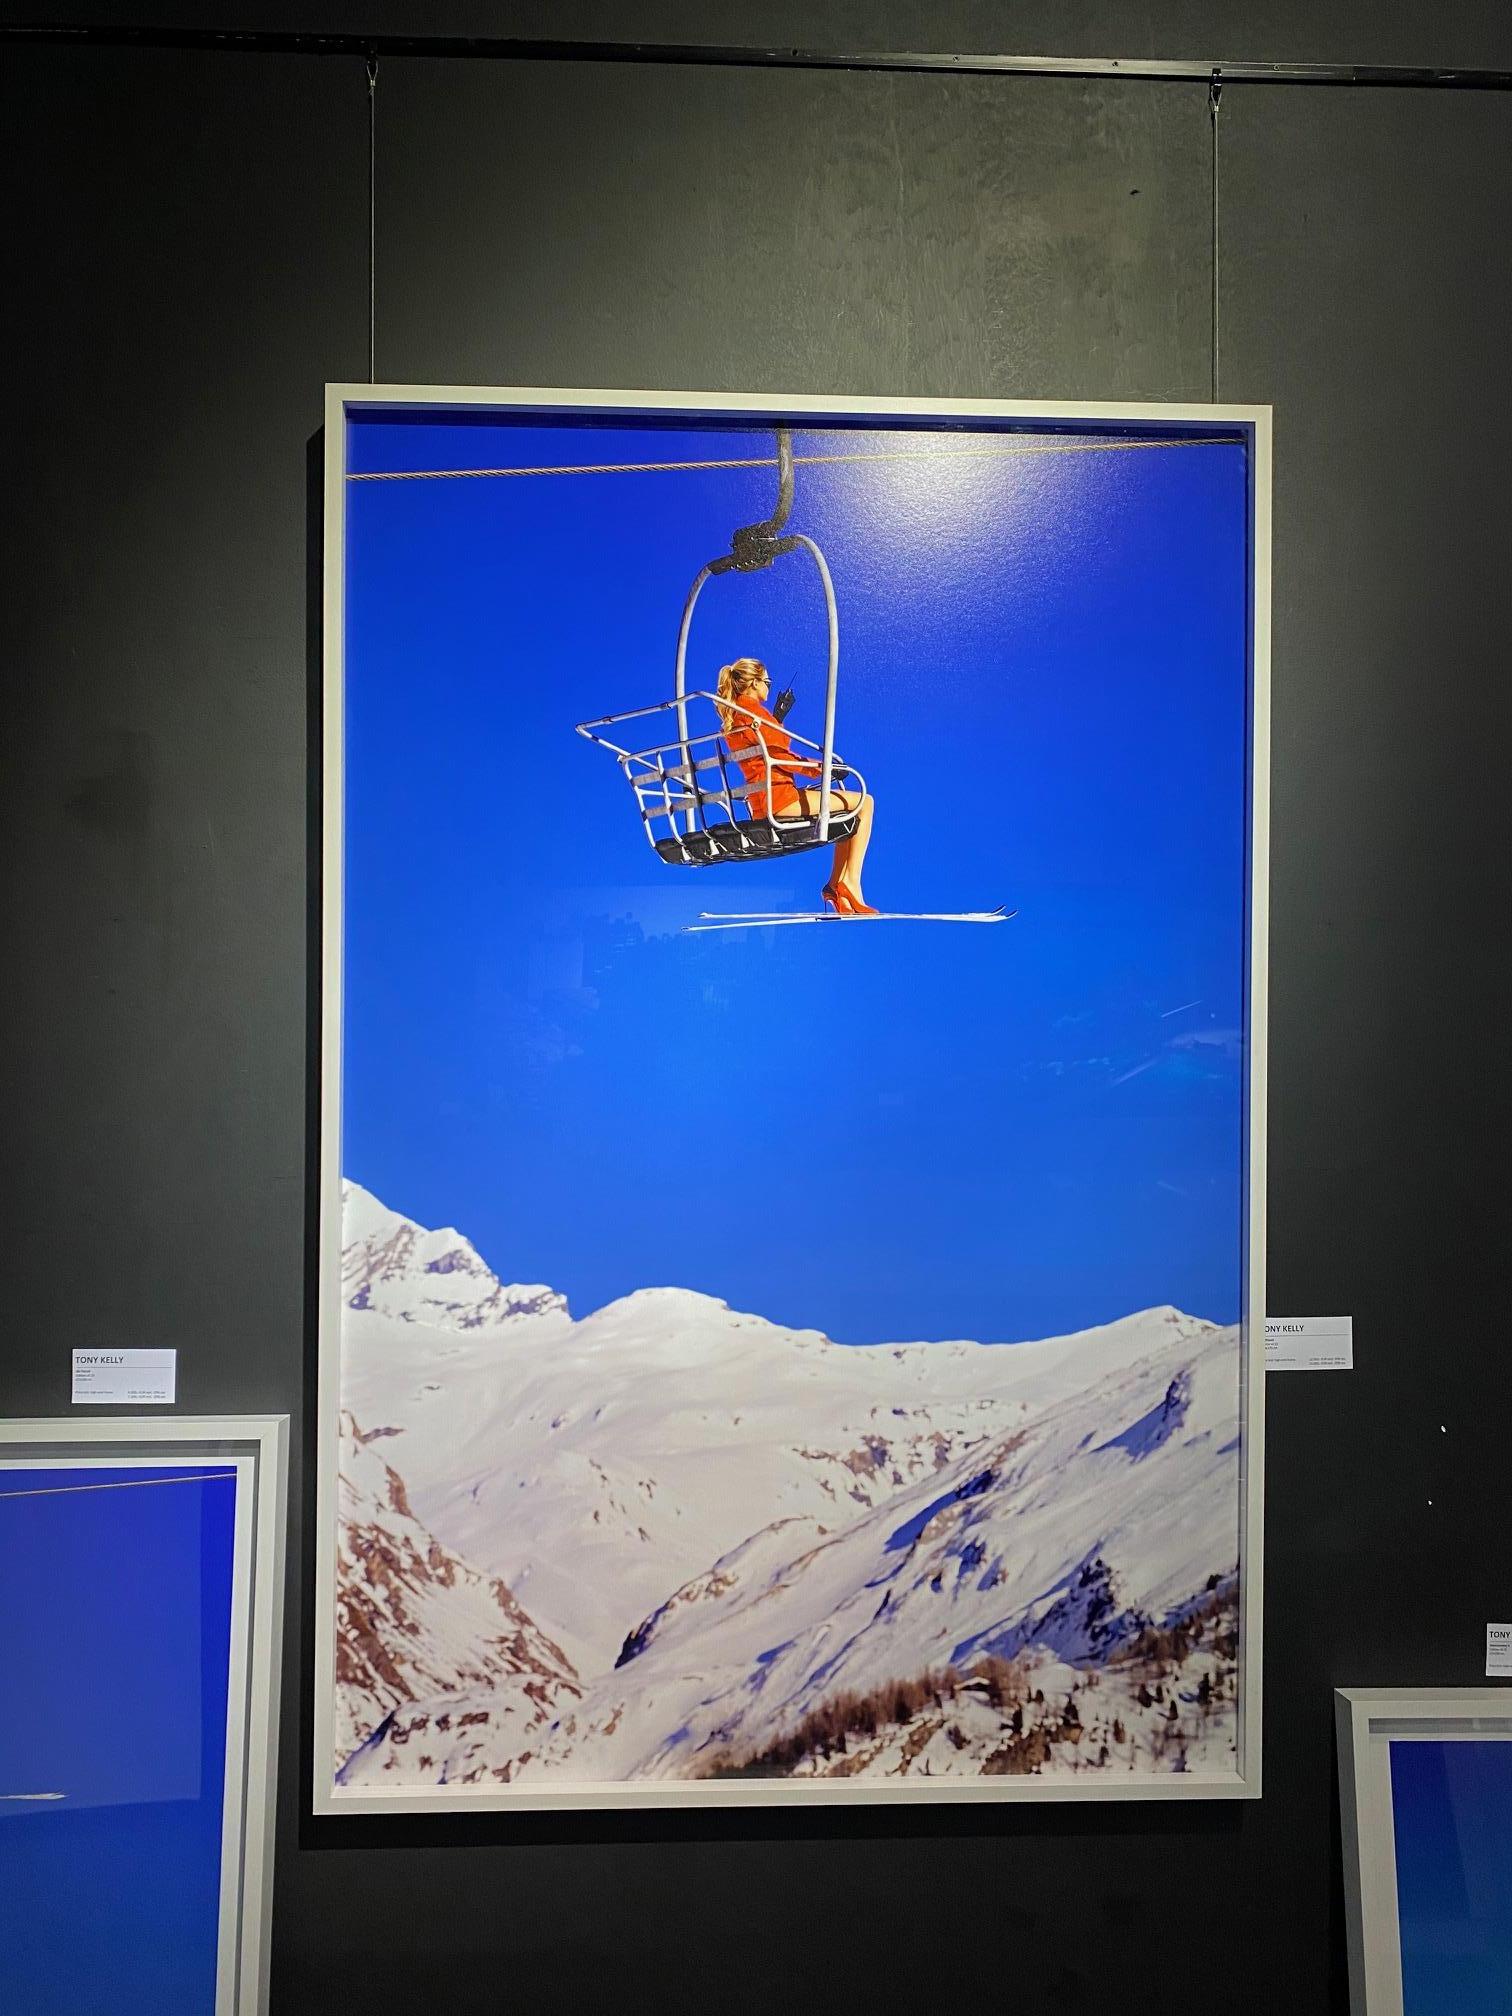 Ski Patrol Chairlift - Landschaftsporträt eines Modells in den alpinen Bergen – Photograph von Tony Kelly